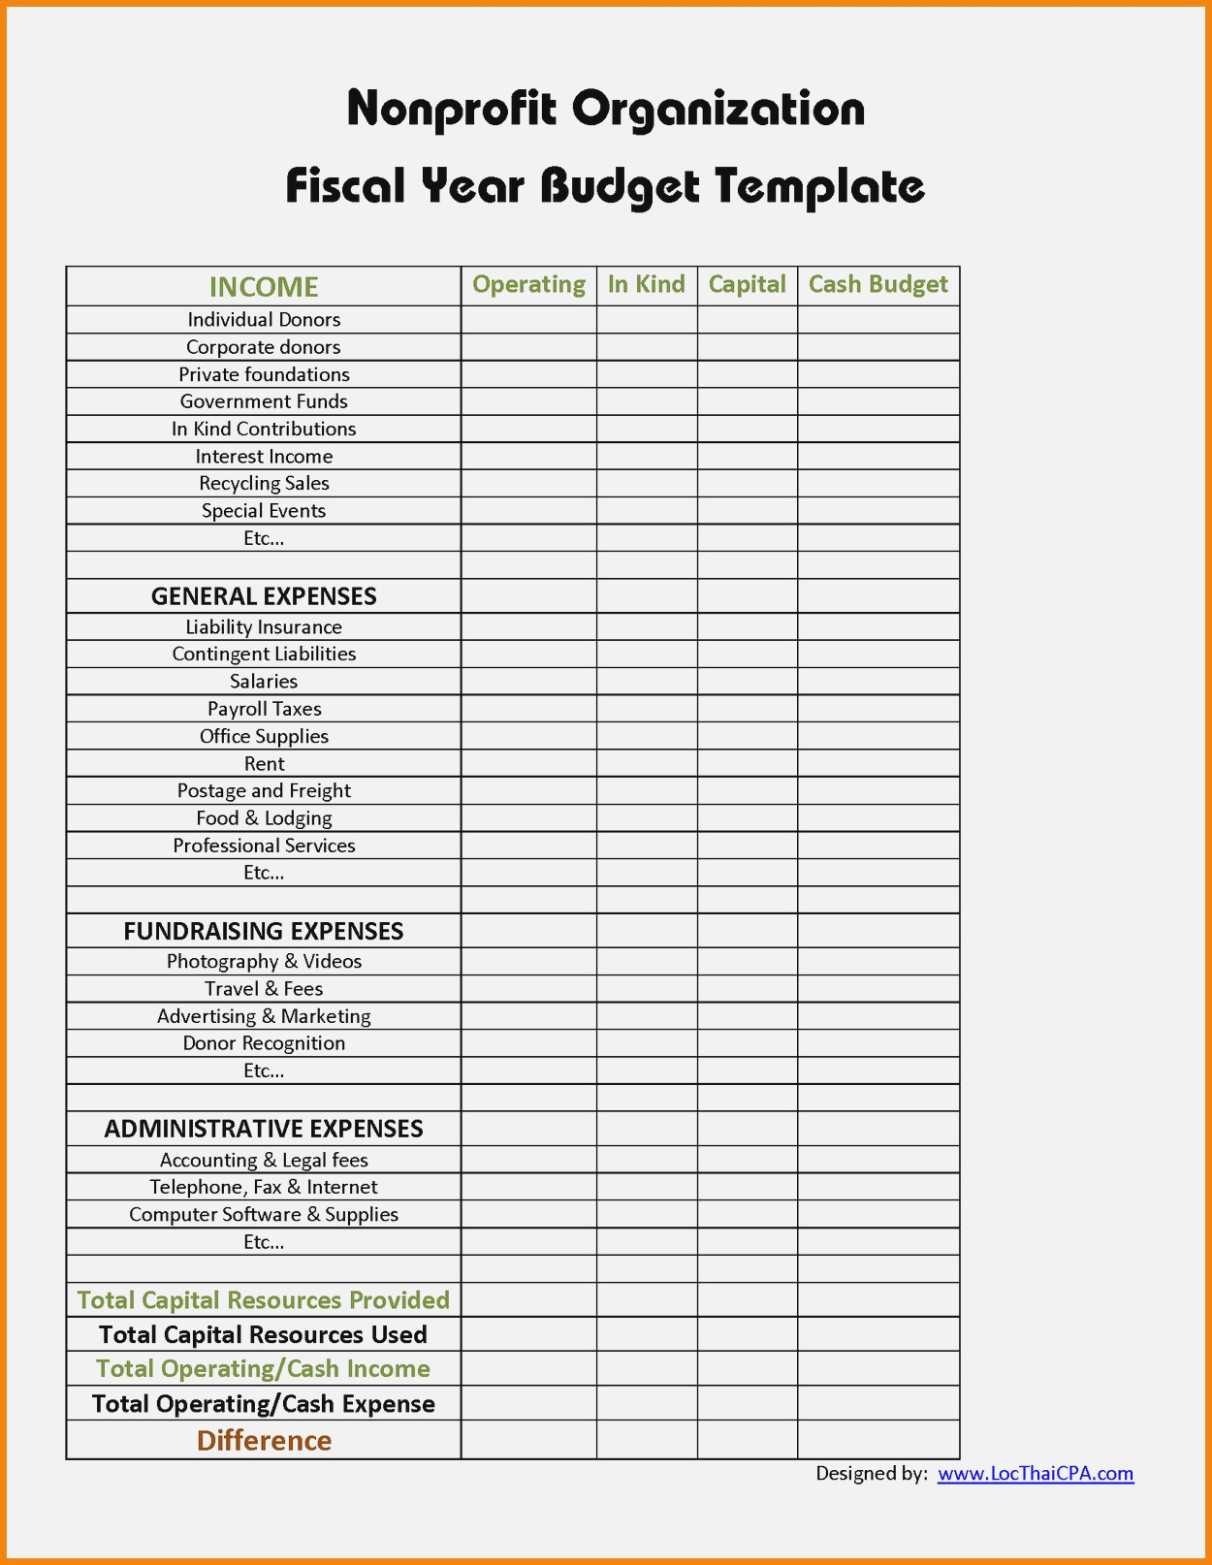 10 Treasurers Report Template | Resume Samples Regarding Treasurer Report Template Non Profit